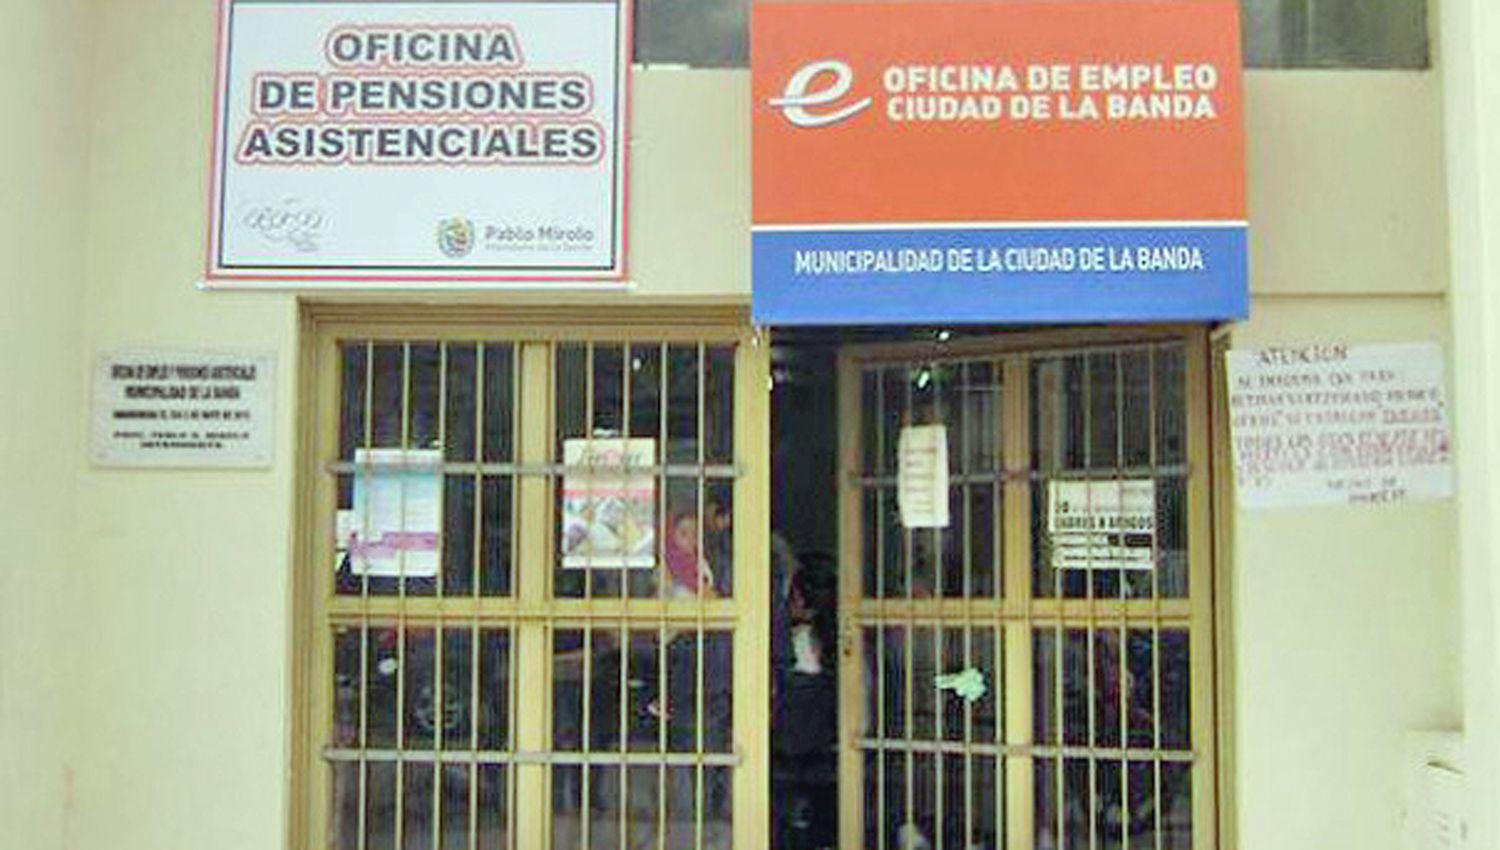 La Oficina de Empleo de La Banda ofrece capacitaciones a traveacutes del sistema virtual